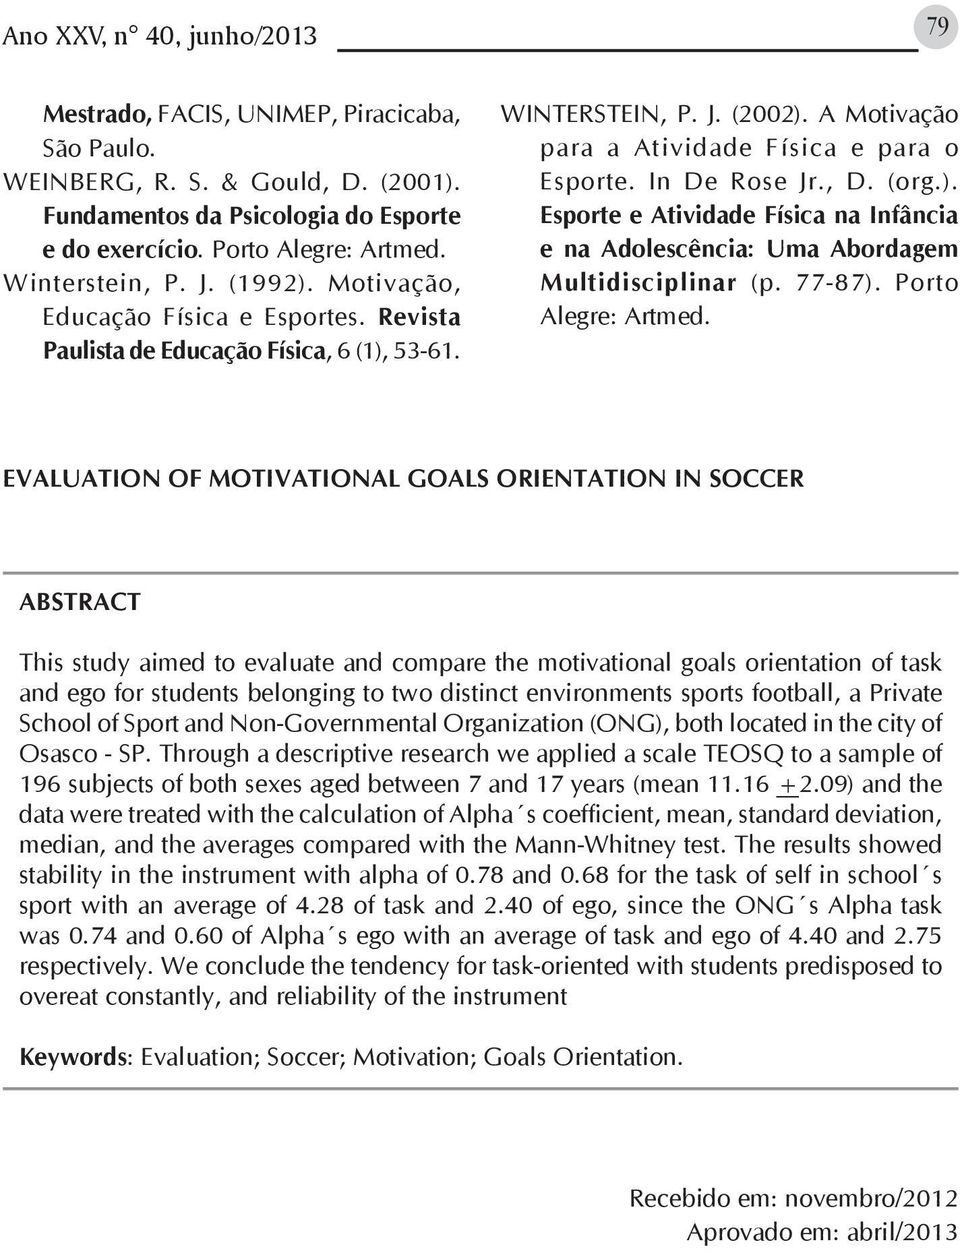 In De Rose Jr., D. (org.). Esporte e Atividade Física na Infância e na Adolescência: Uma Abordagem Multidisciplinar (p. 77-87). Porto Alegre: Artmed.